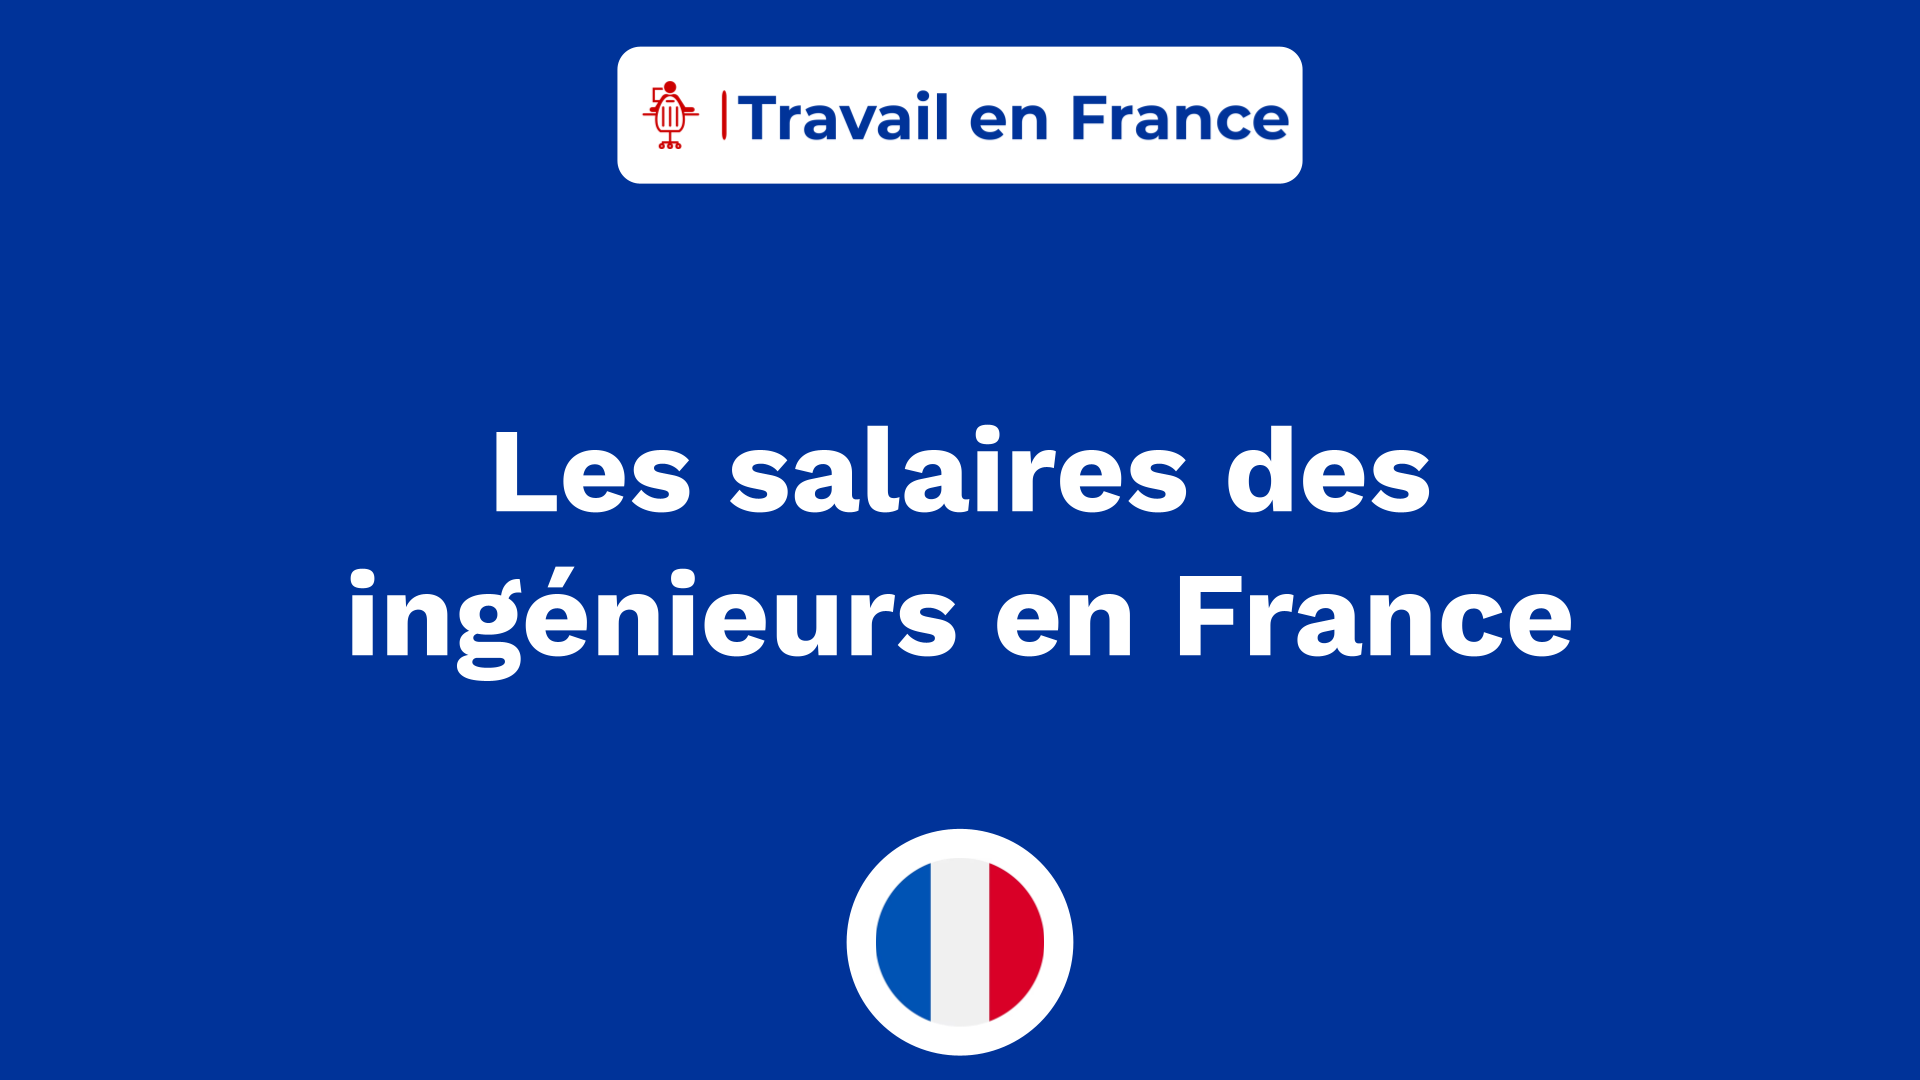 Les salaires des ingénieurs en France